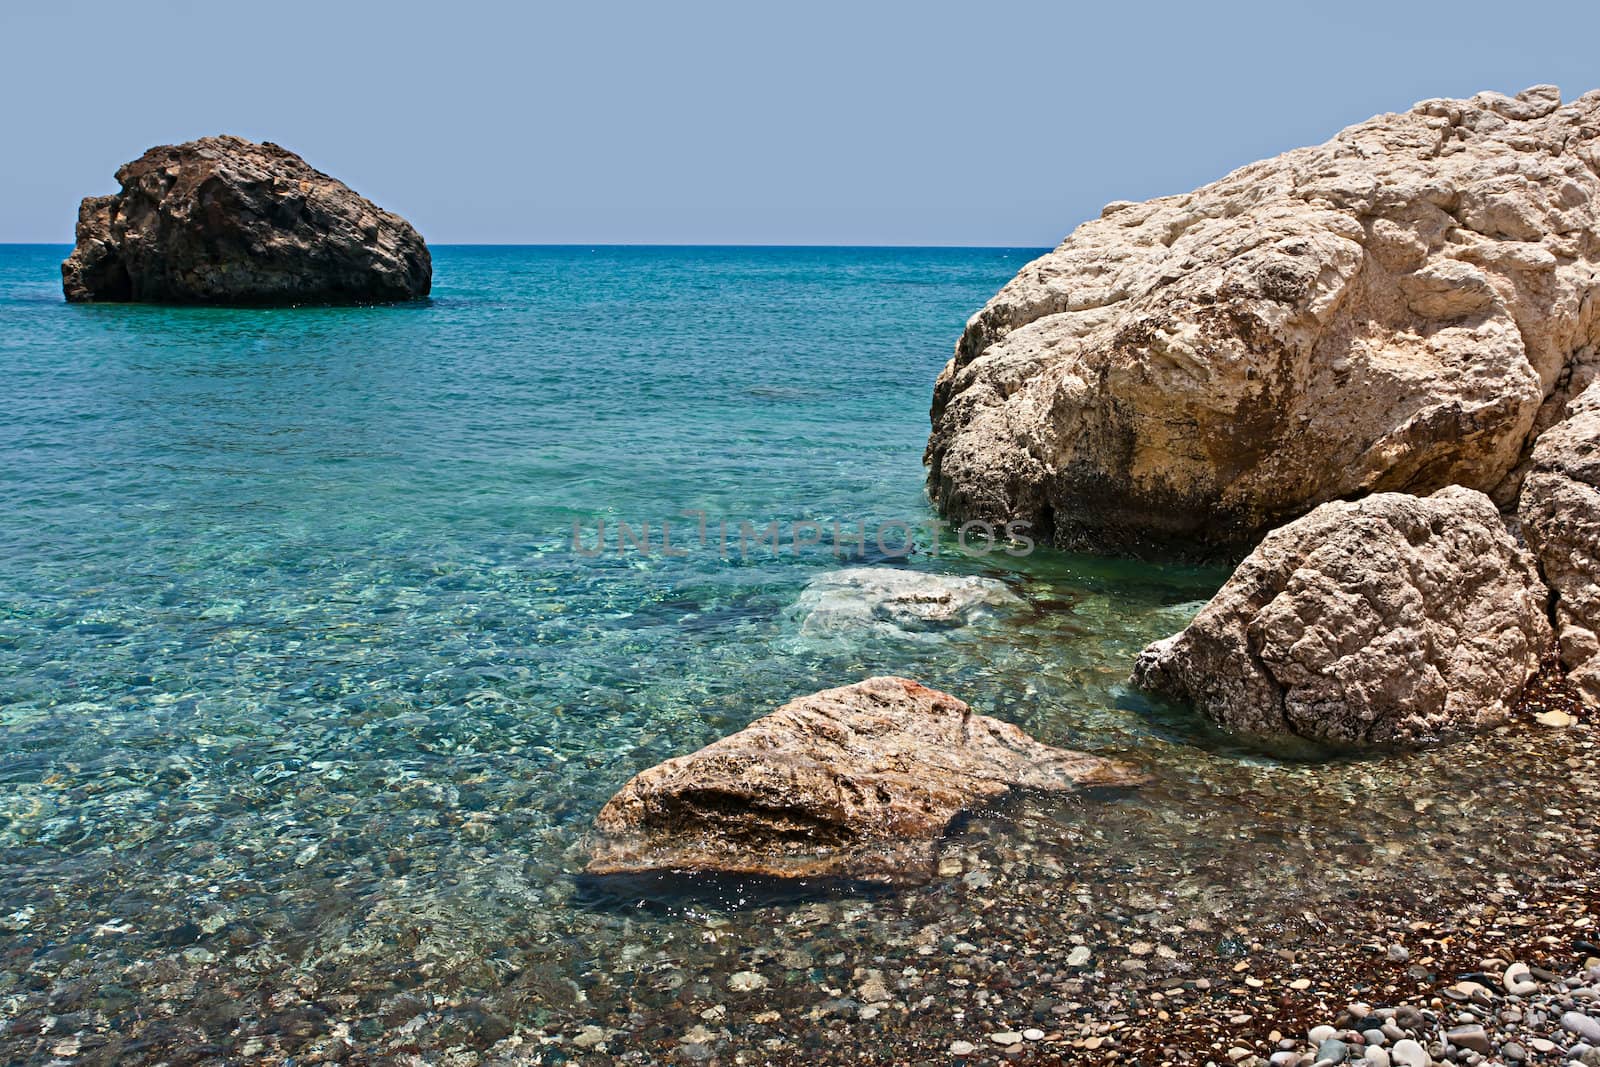 Cyprus. Mediterranean Sea by palinchak